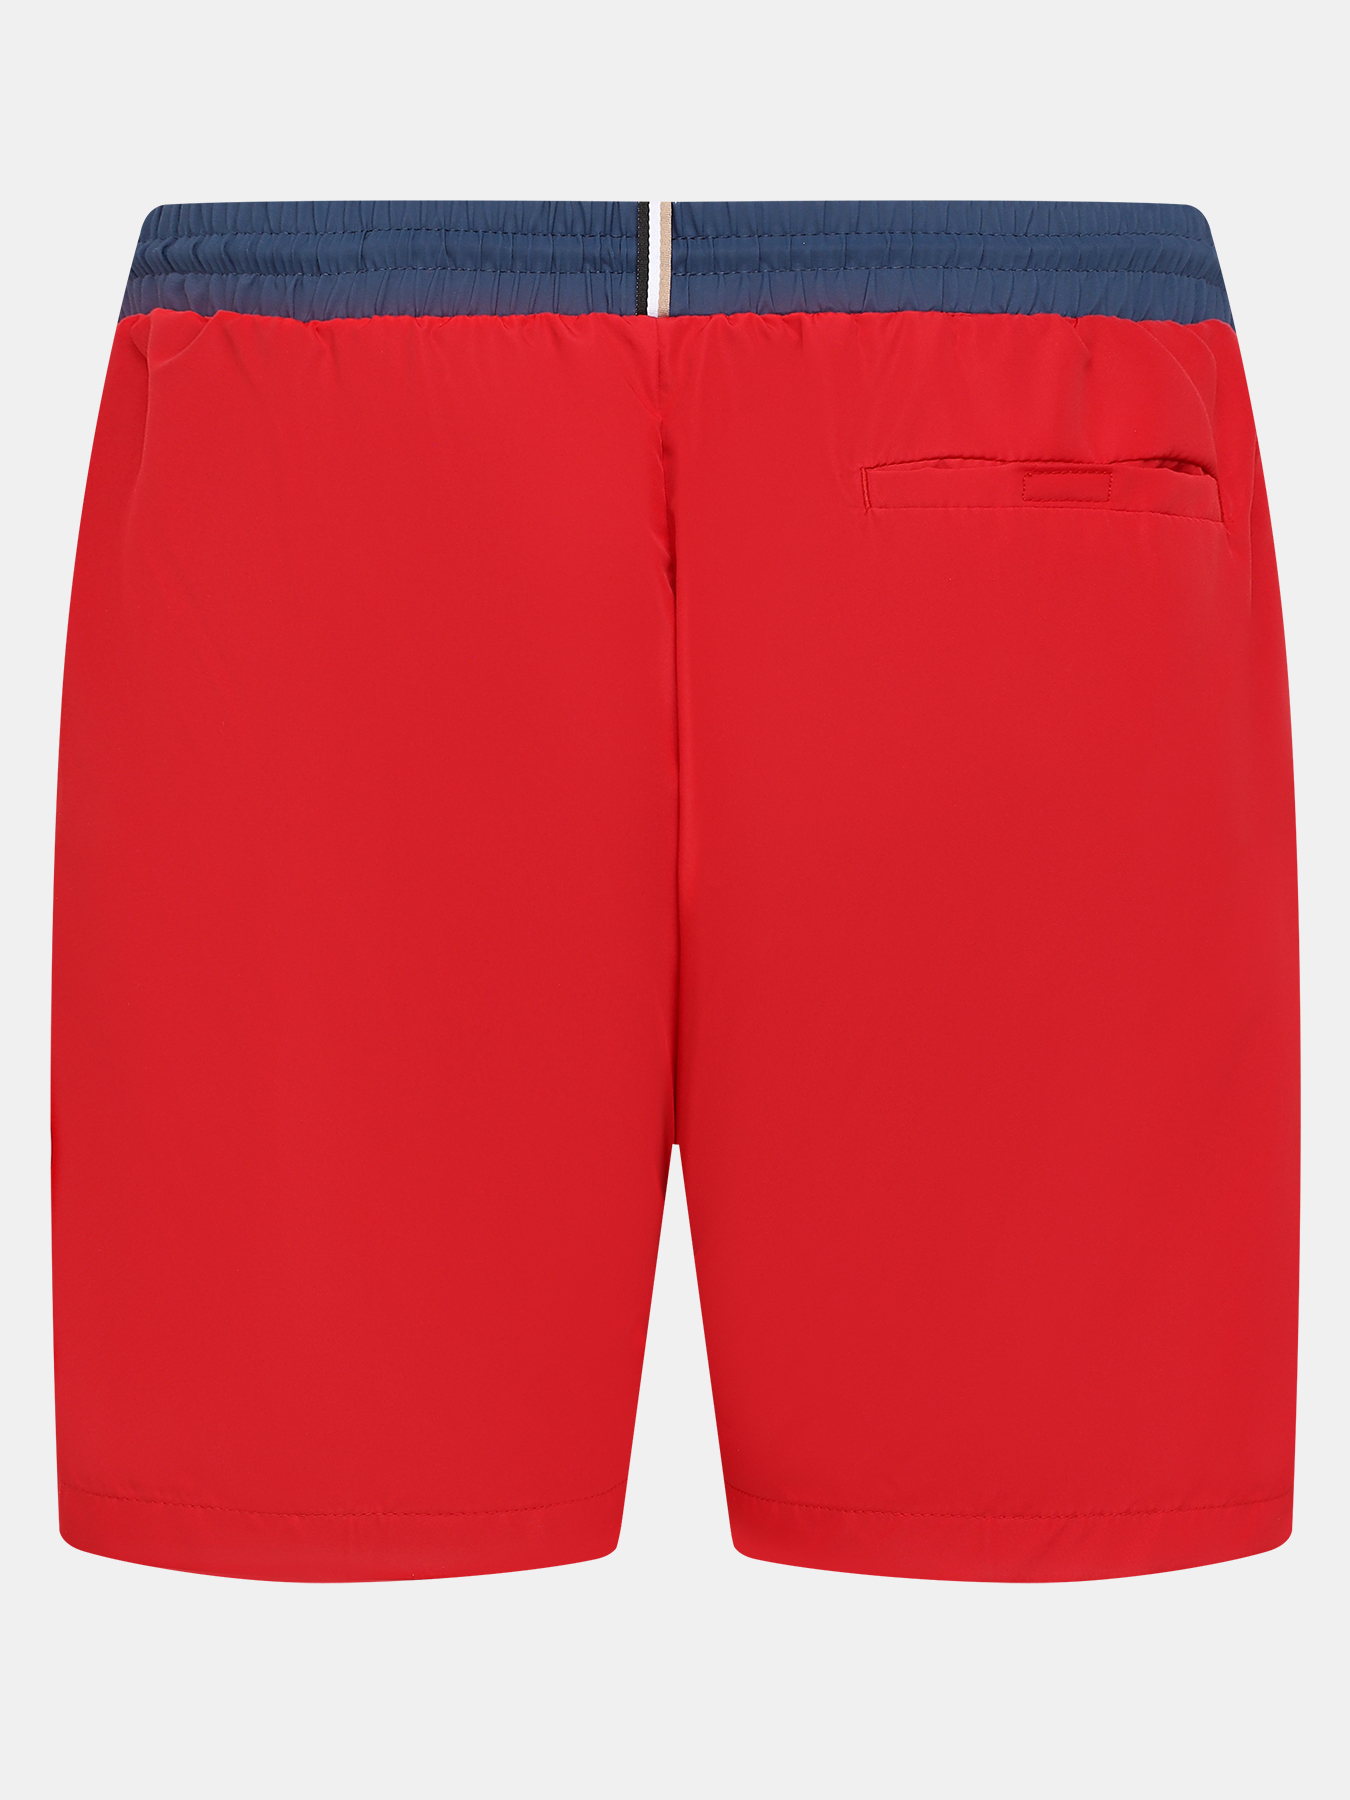 Плавательные шорты Starfish BOSS 416767-046, цвет красный, размер 54 - фото 2